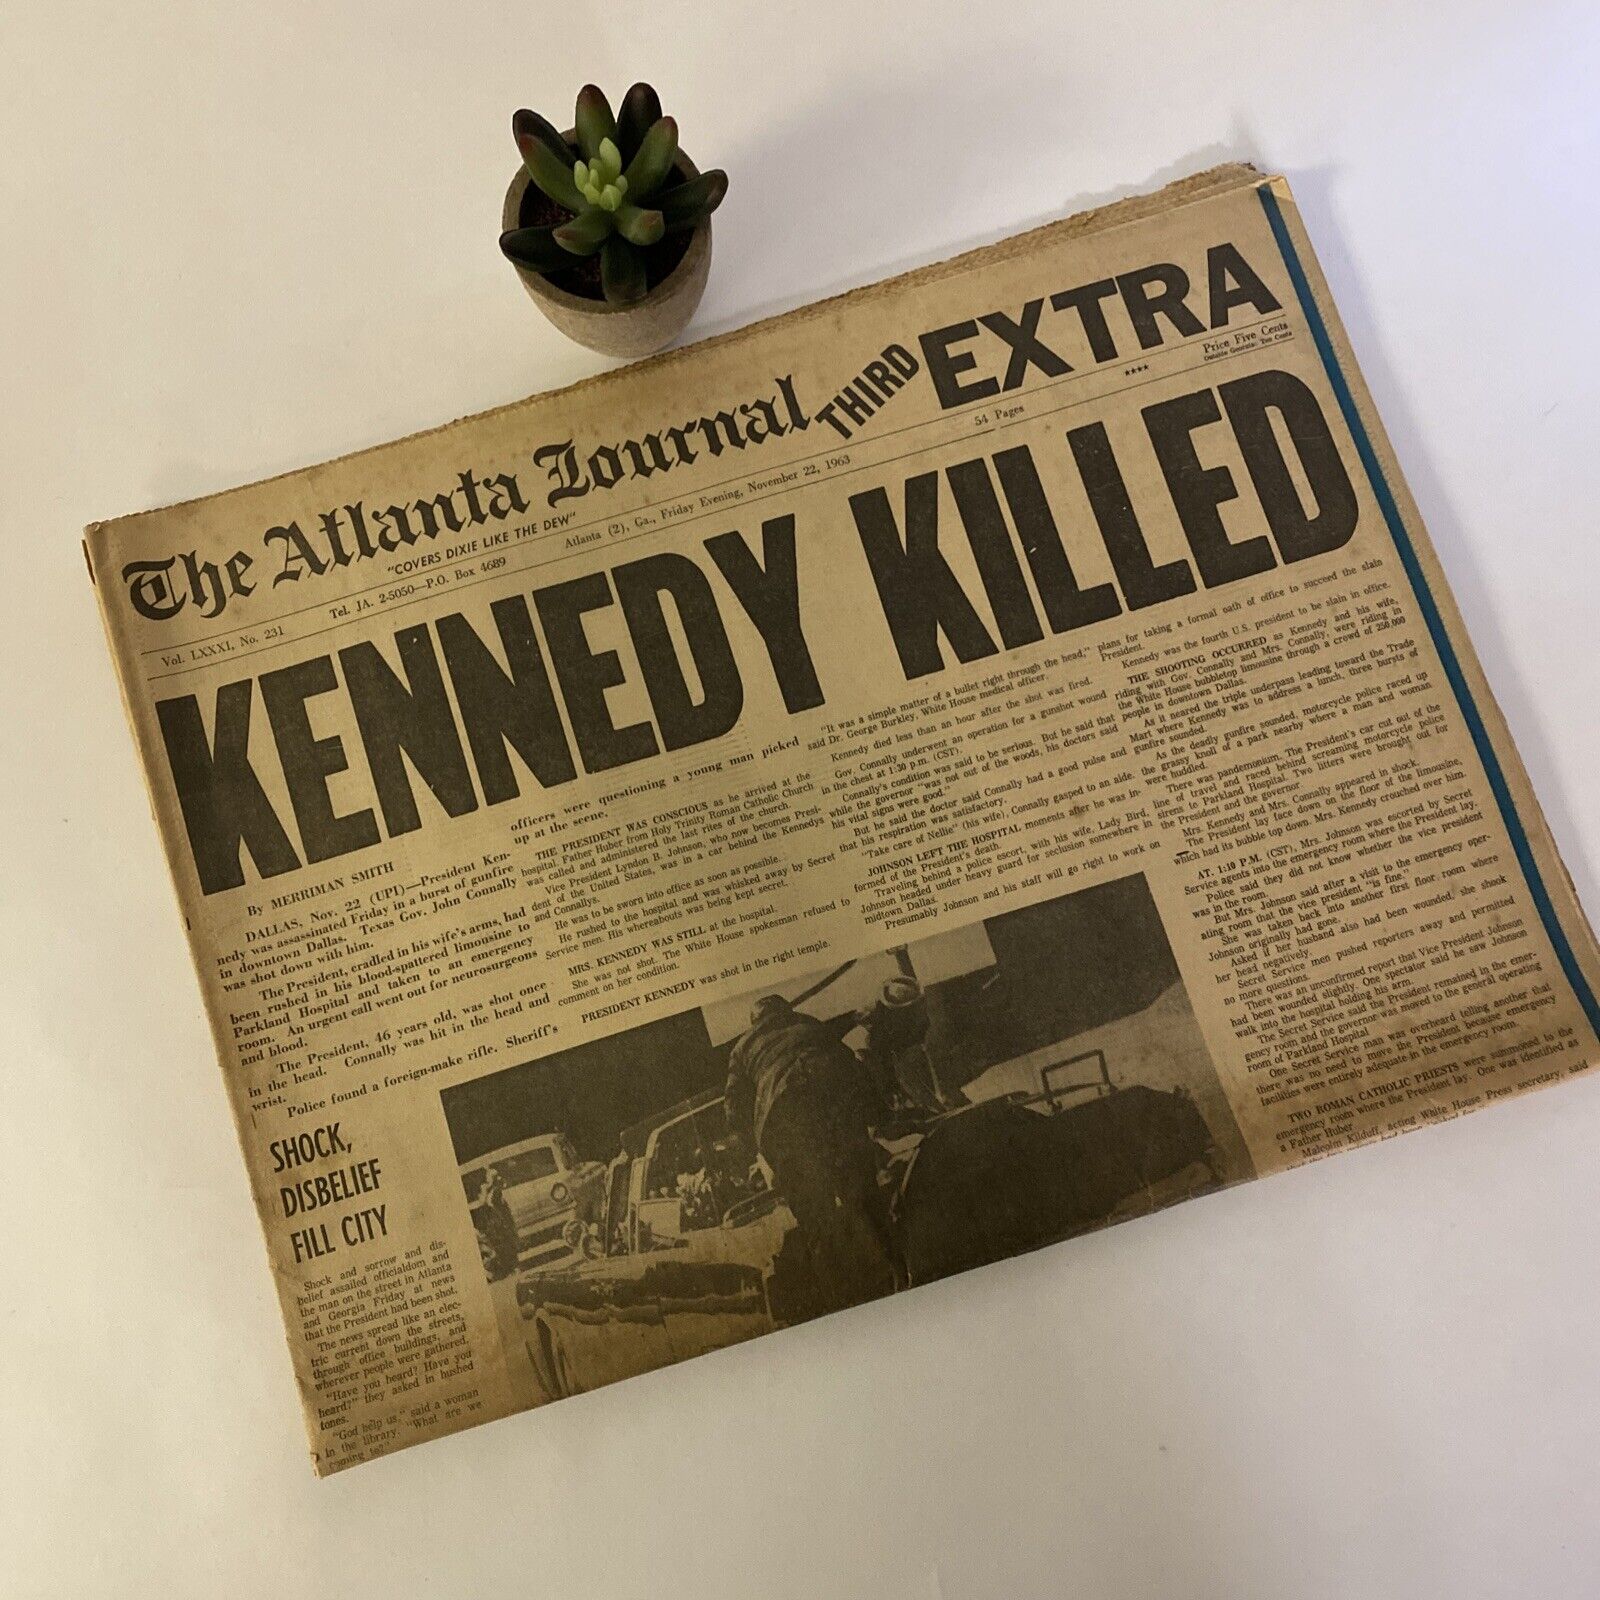 Atlanta Journal Nov 22 1963. Kennedy killed. Third extra JFK